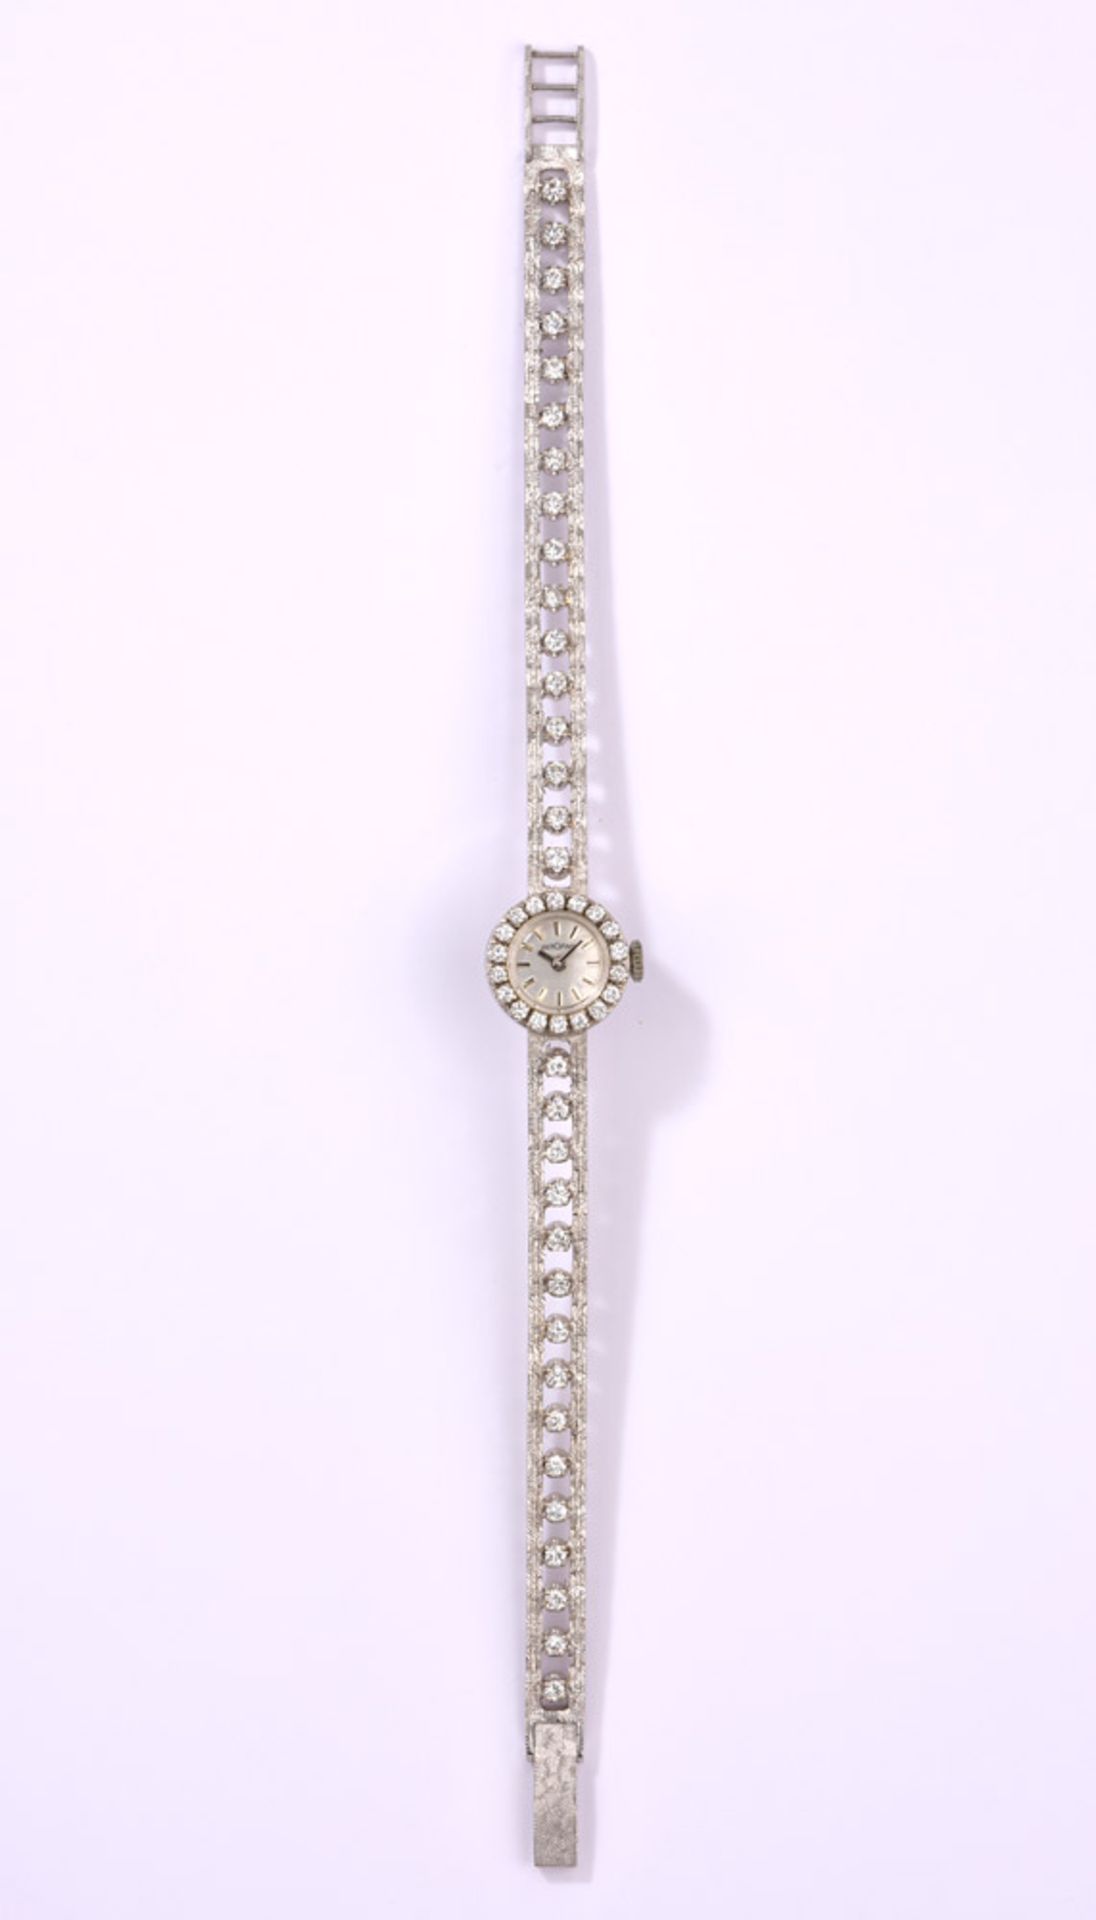 Damenarmbanduhr von Bergana750- Weißgoldgehäuse und -armband, besetzt mit 50 Brillanten. L 19,5